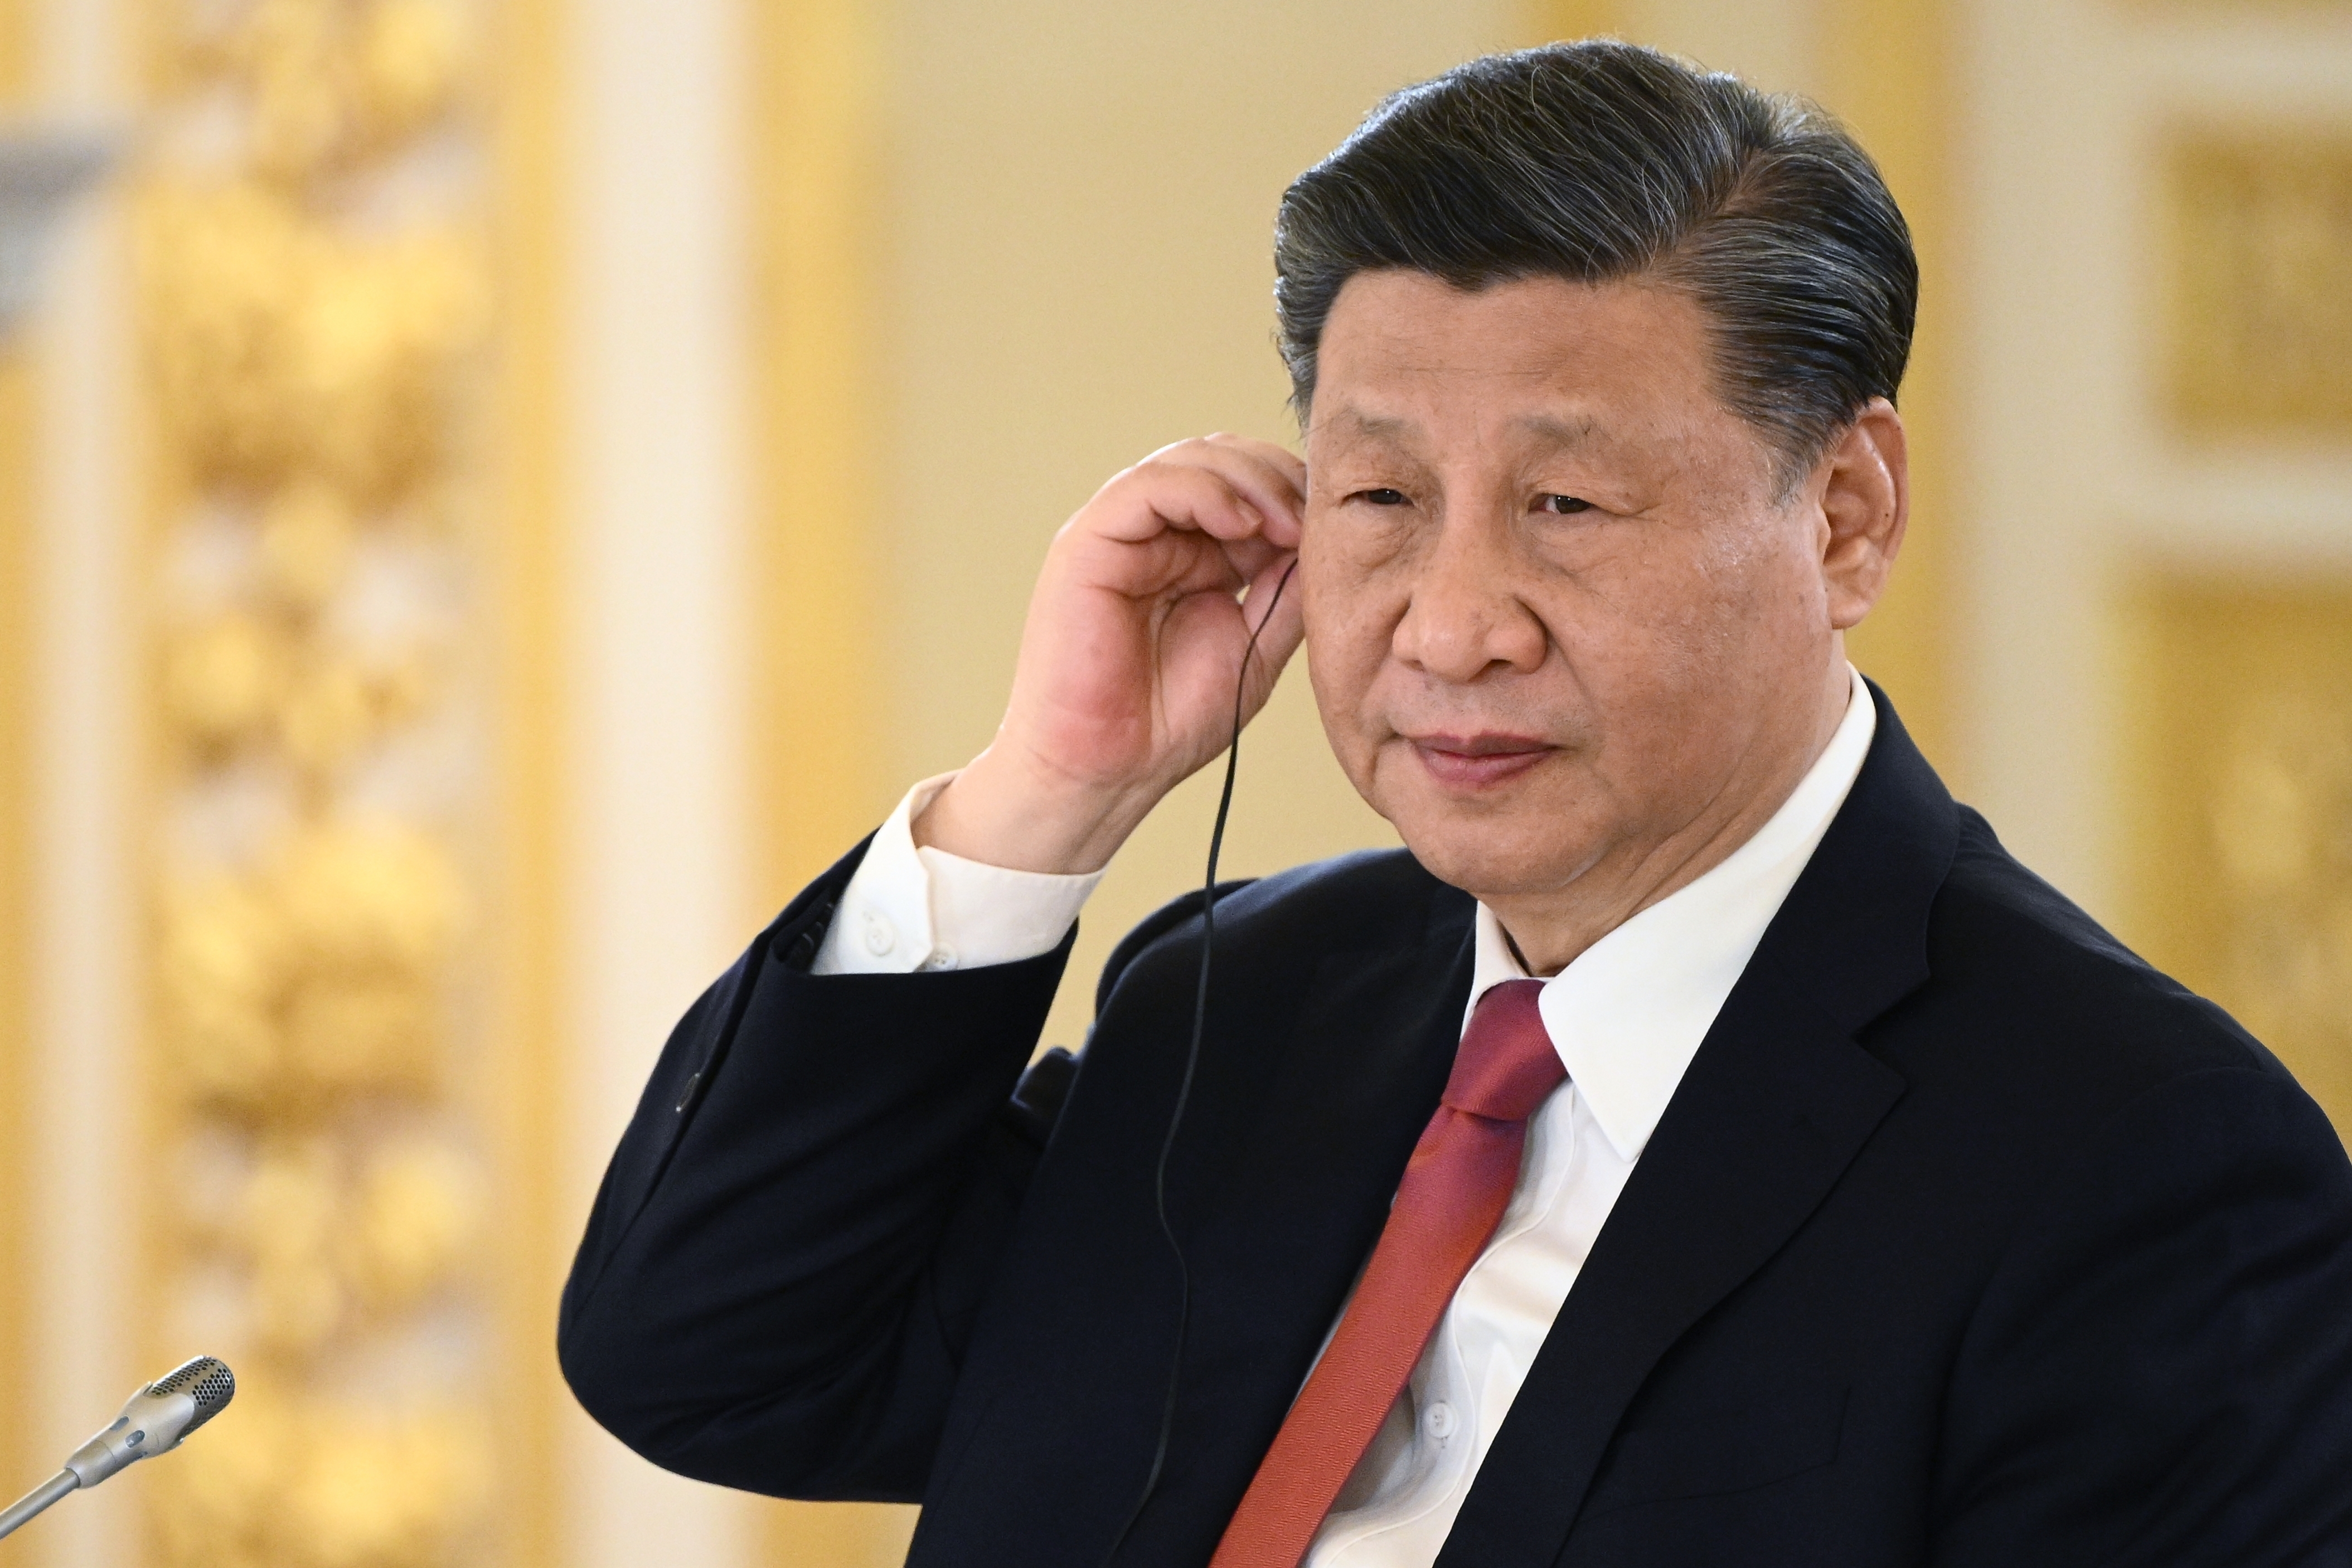 XI, "ofertă" către Europa: China este dispusă să facă din Uniunea Europeană partenerul economic şi comercial cheie / Ce cere la schimb liderul de la Beijing